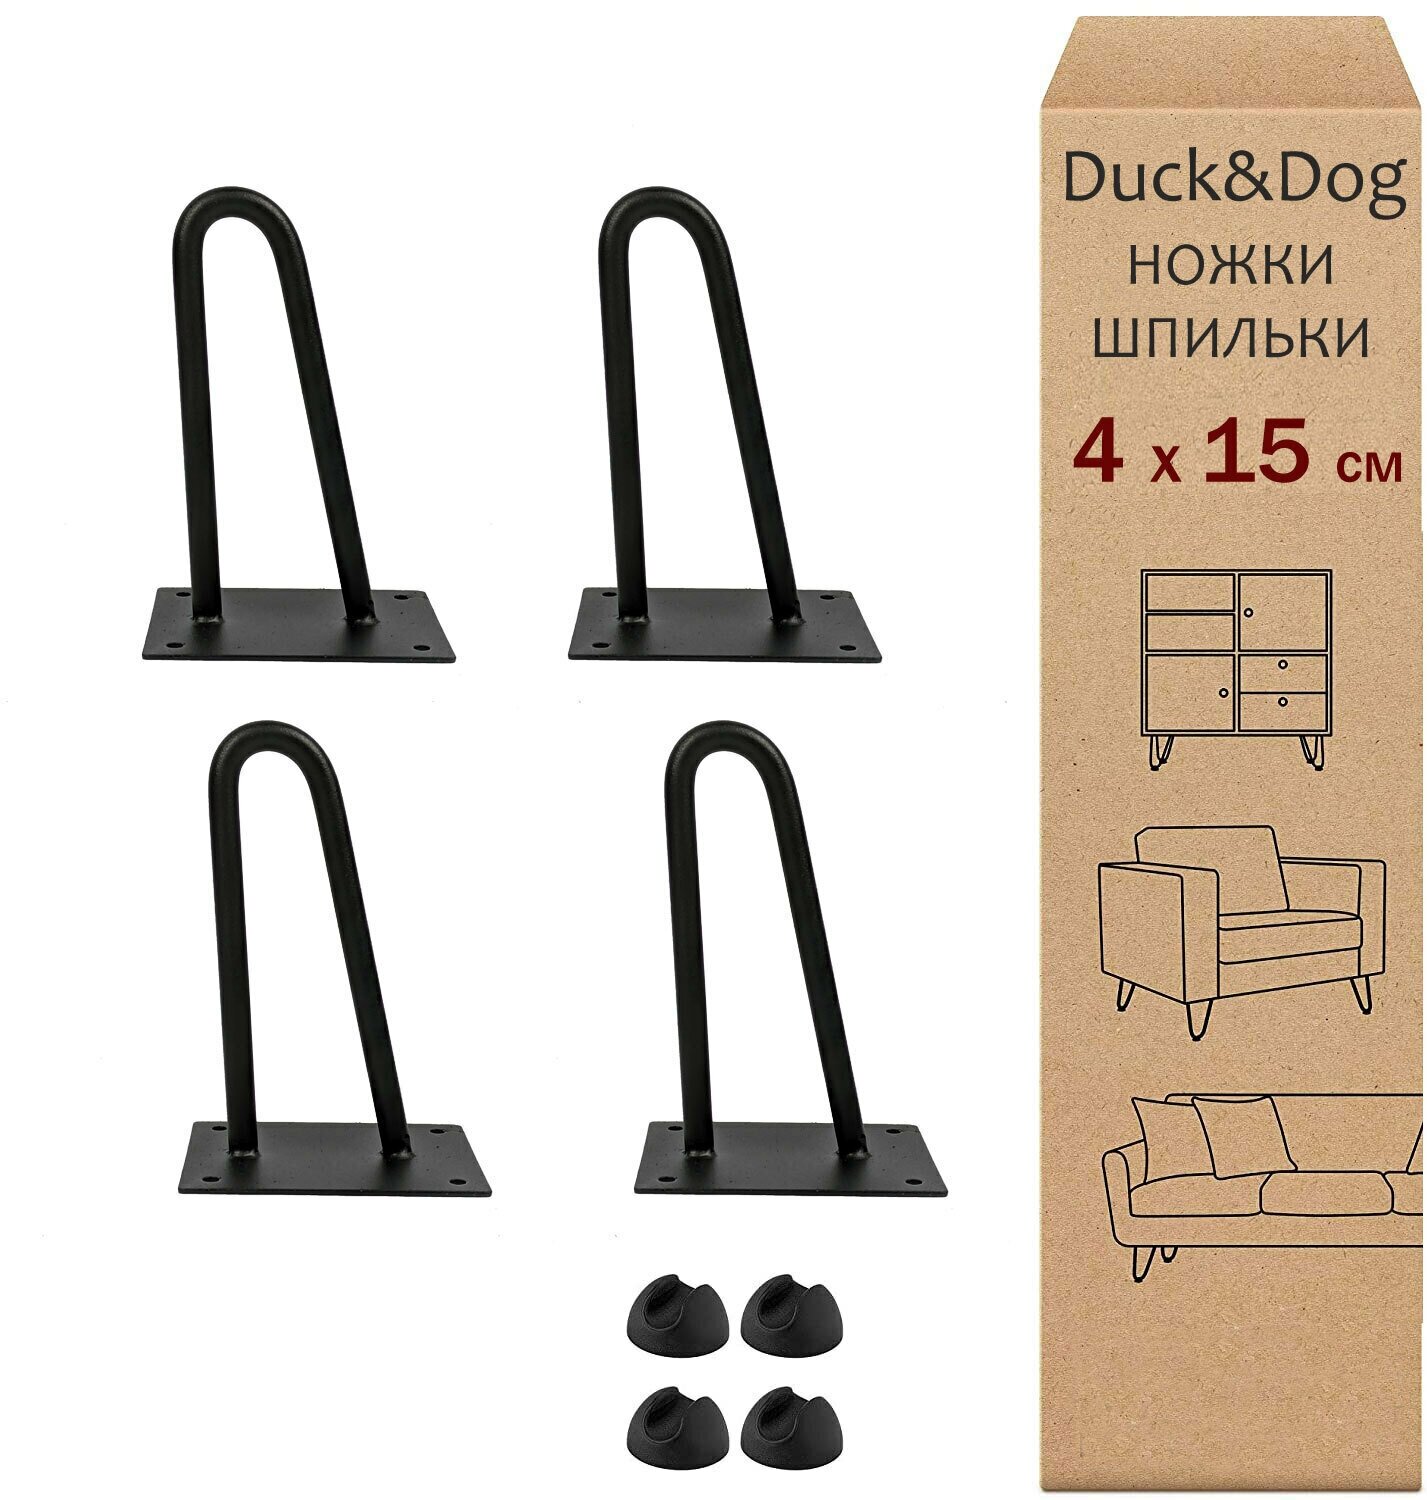 Ножки для стола из металла лофт Duck&Dog / черные / Высота 15 см. / в комплекте 4 шт.